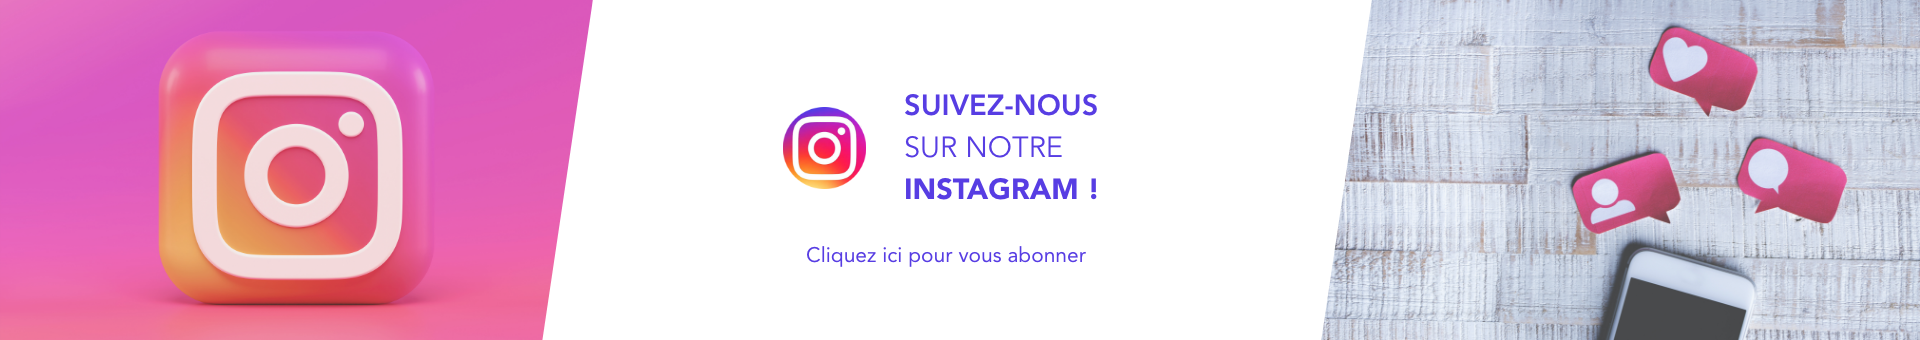 Logo rose du réseau social Instagram de la pharmacie